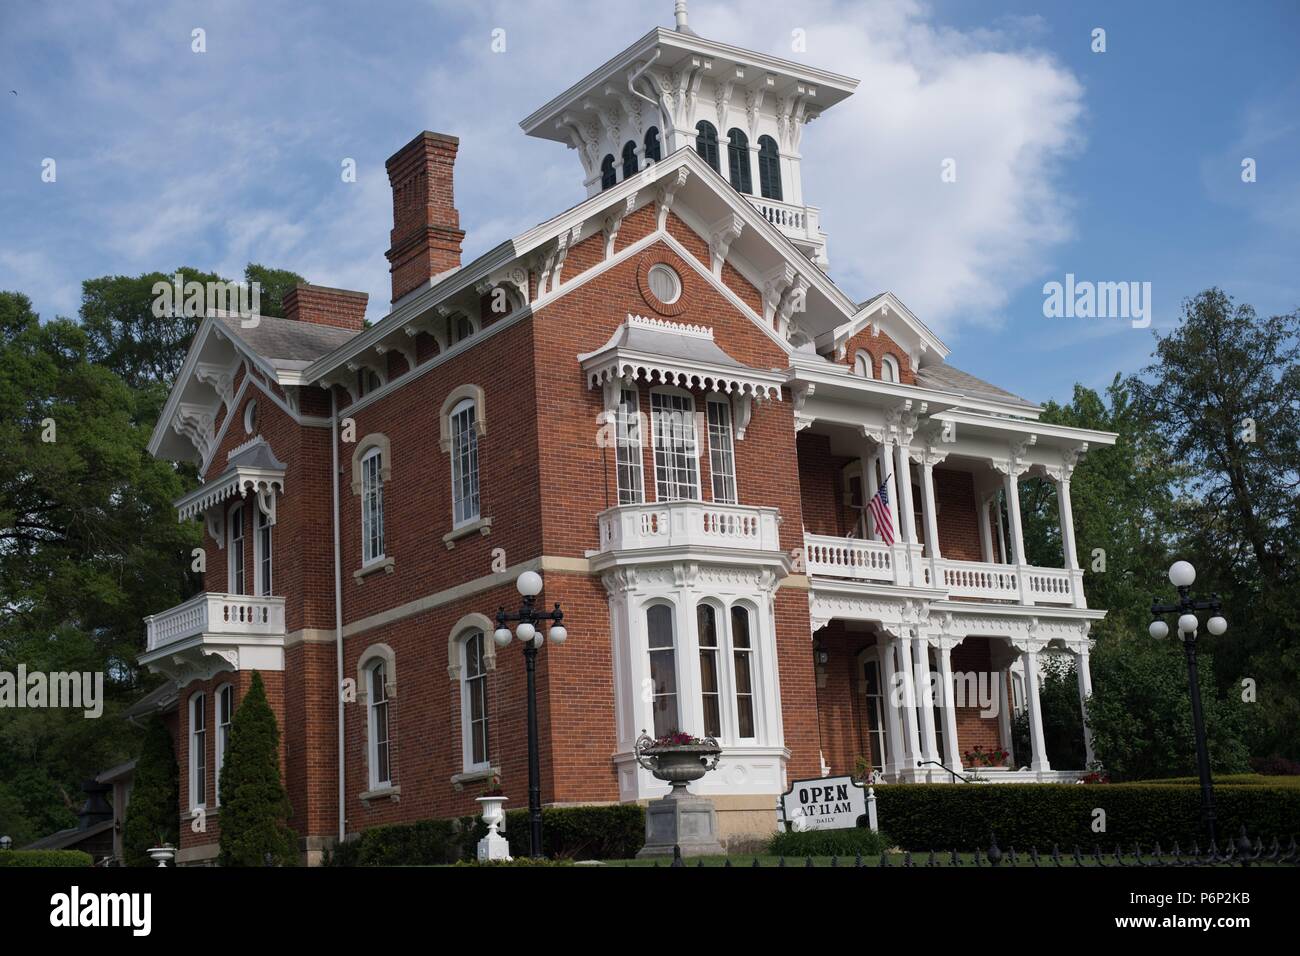 Galena, Illinois, USA. L'hôtel Belvedere et jardins à Galena, Illinois. Le belvédère a été construit en 1857 et est ouvert au public pour des visites. Banque D'Images